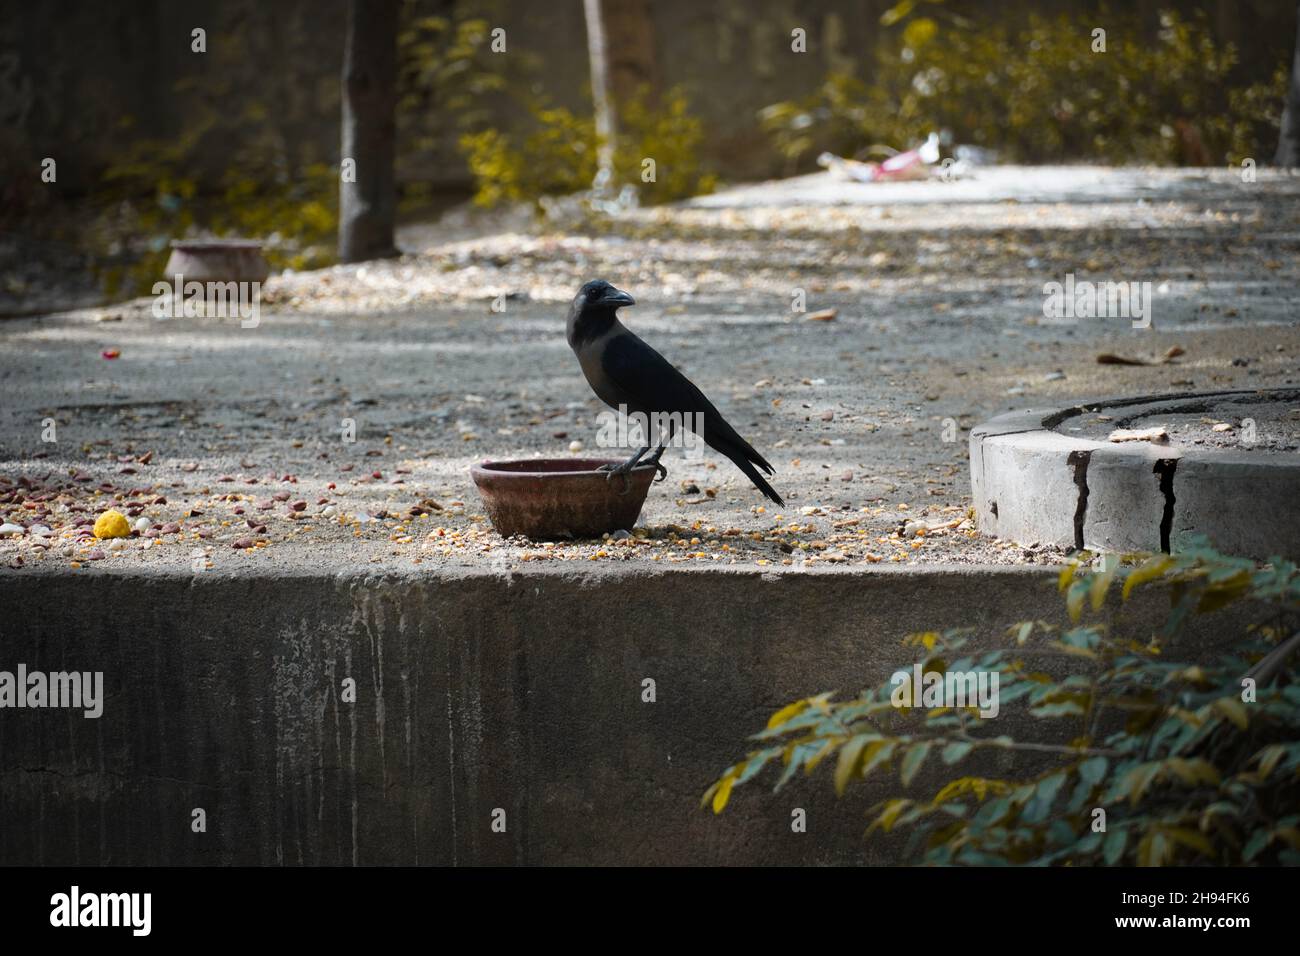 Imagen de agua potable de cuervo sediento al aire libre Foto de stock